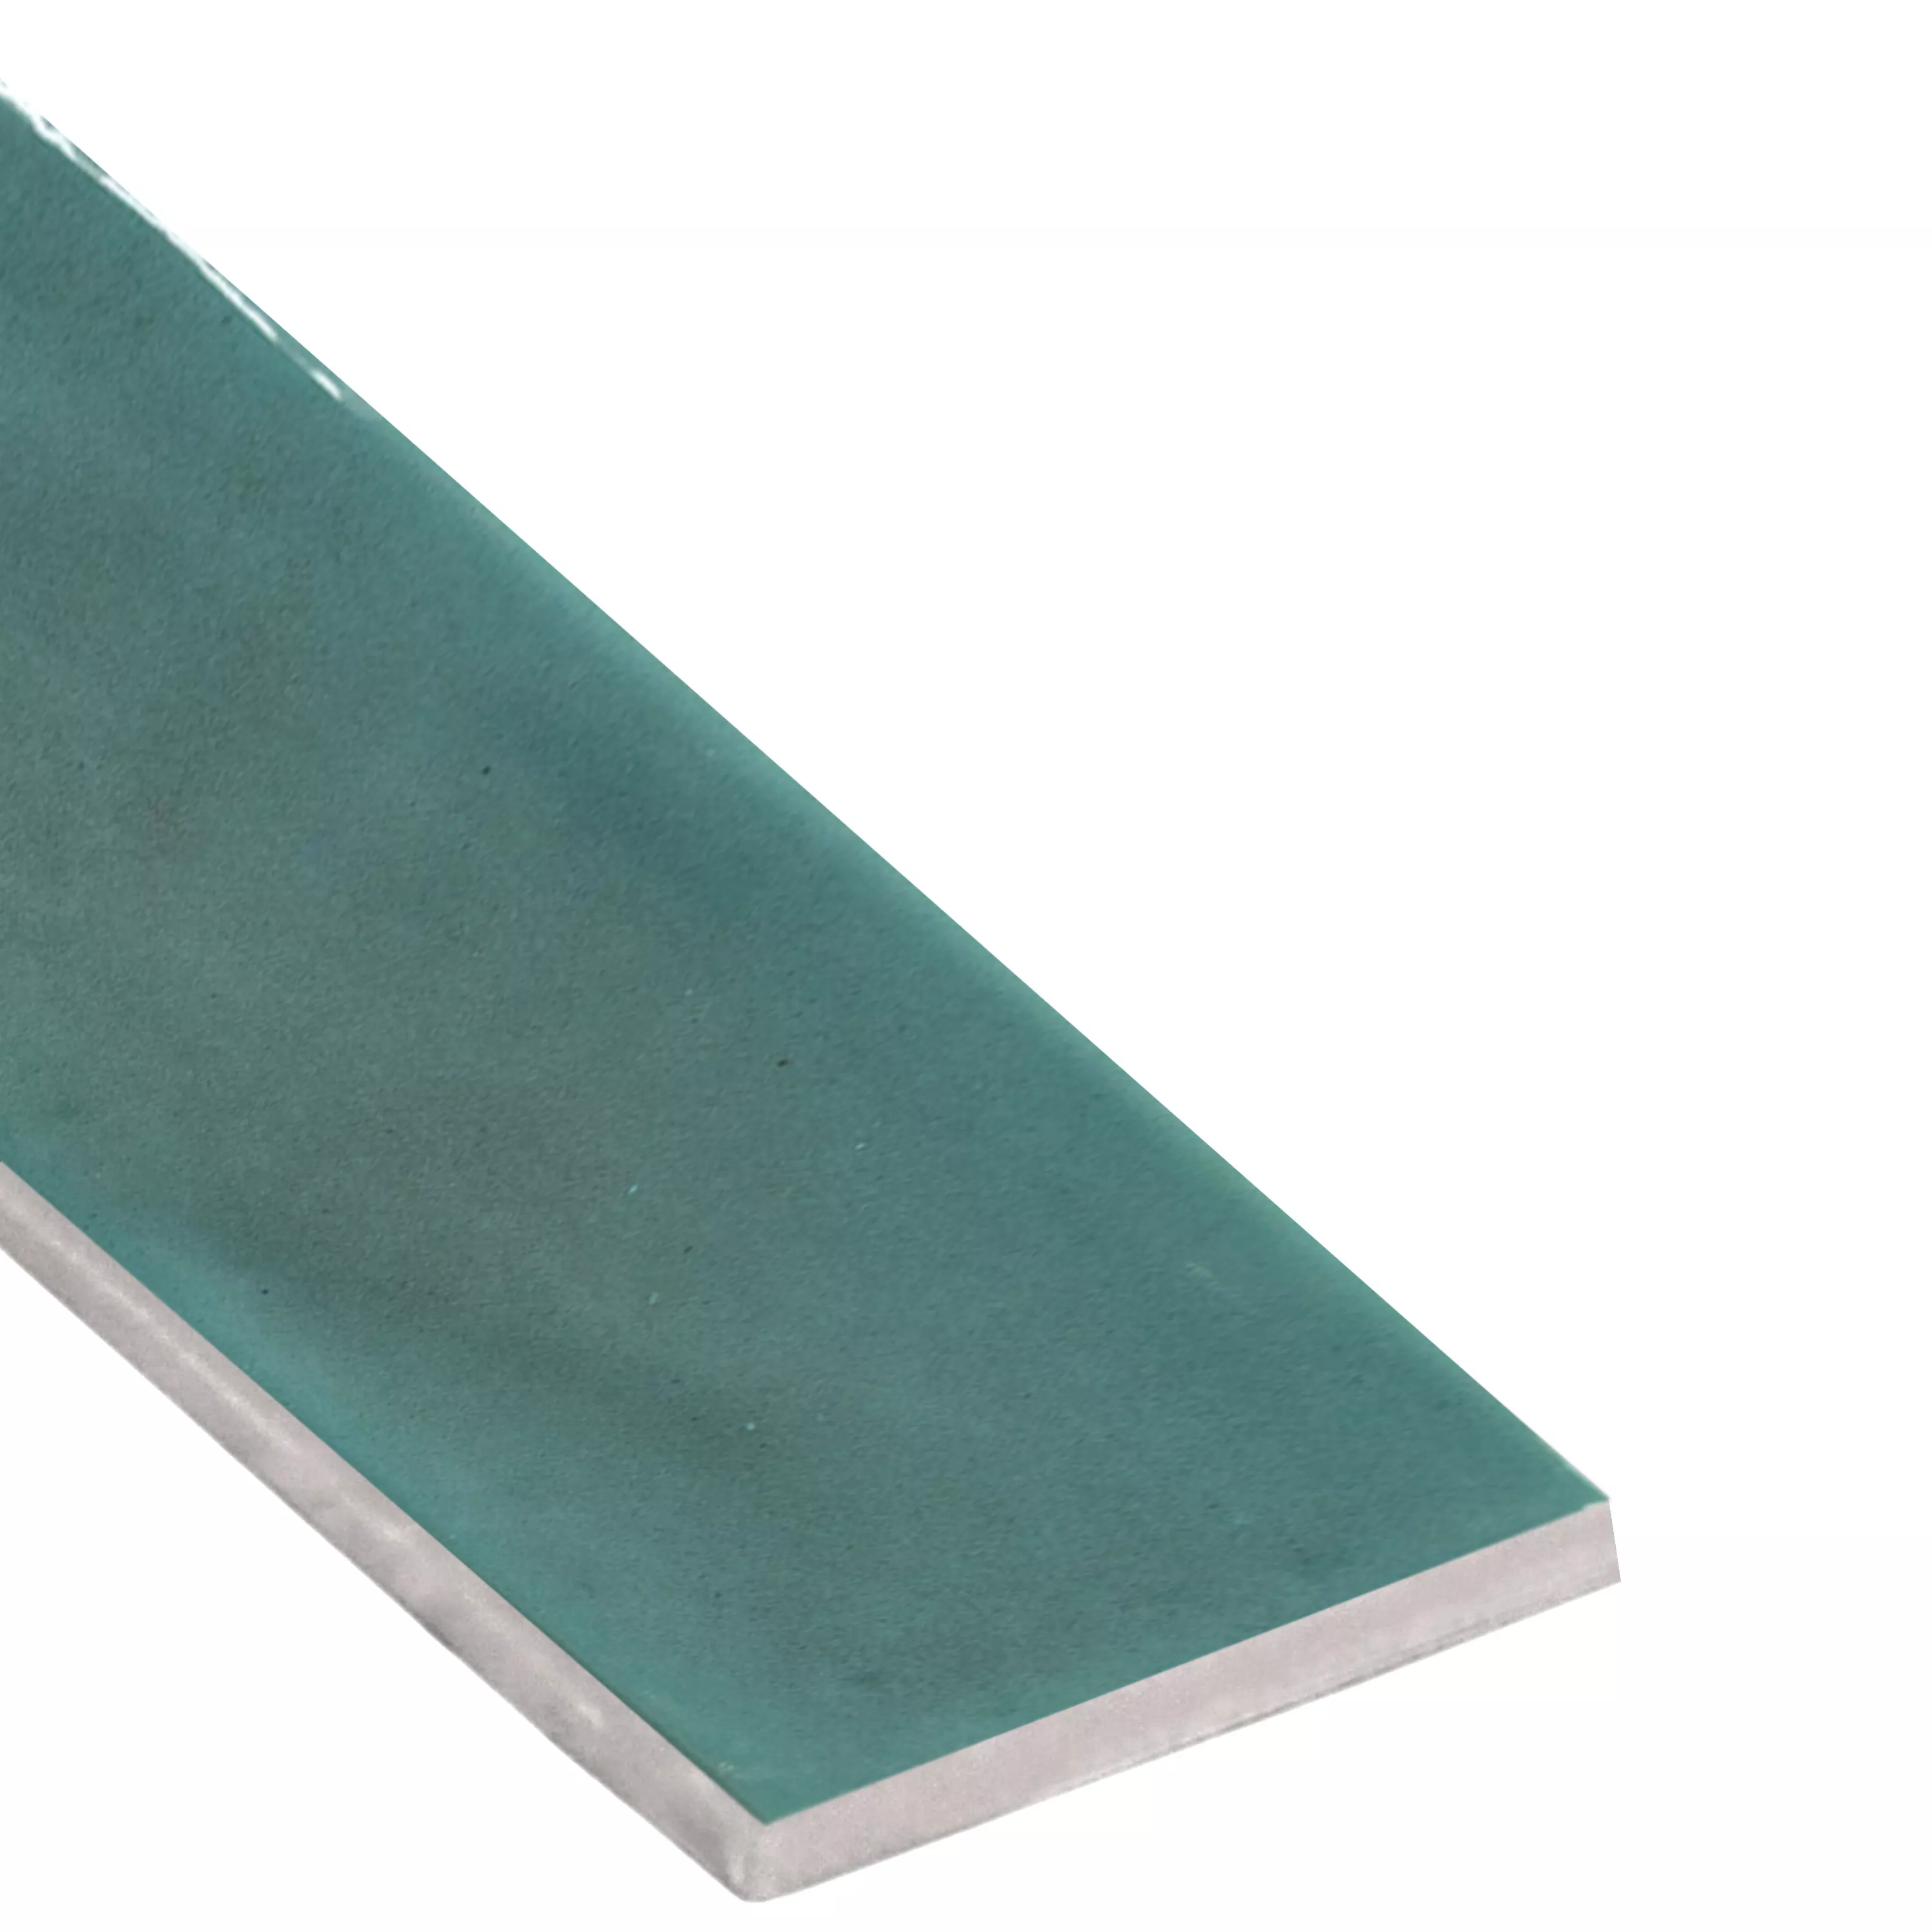 Vzorek Nástěnné Obklady Conway Zvlněné 7,5x30cm Smaragdová Zeleň